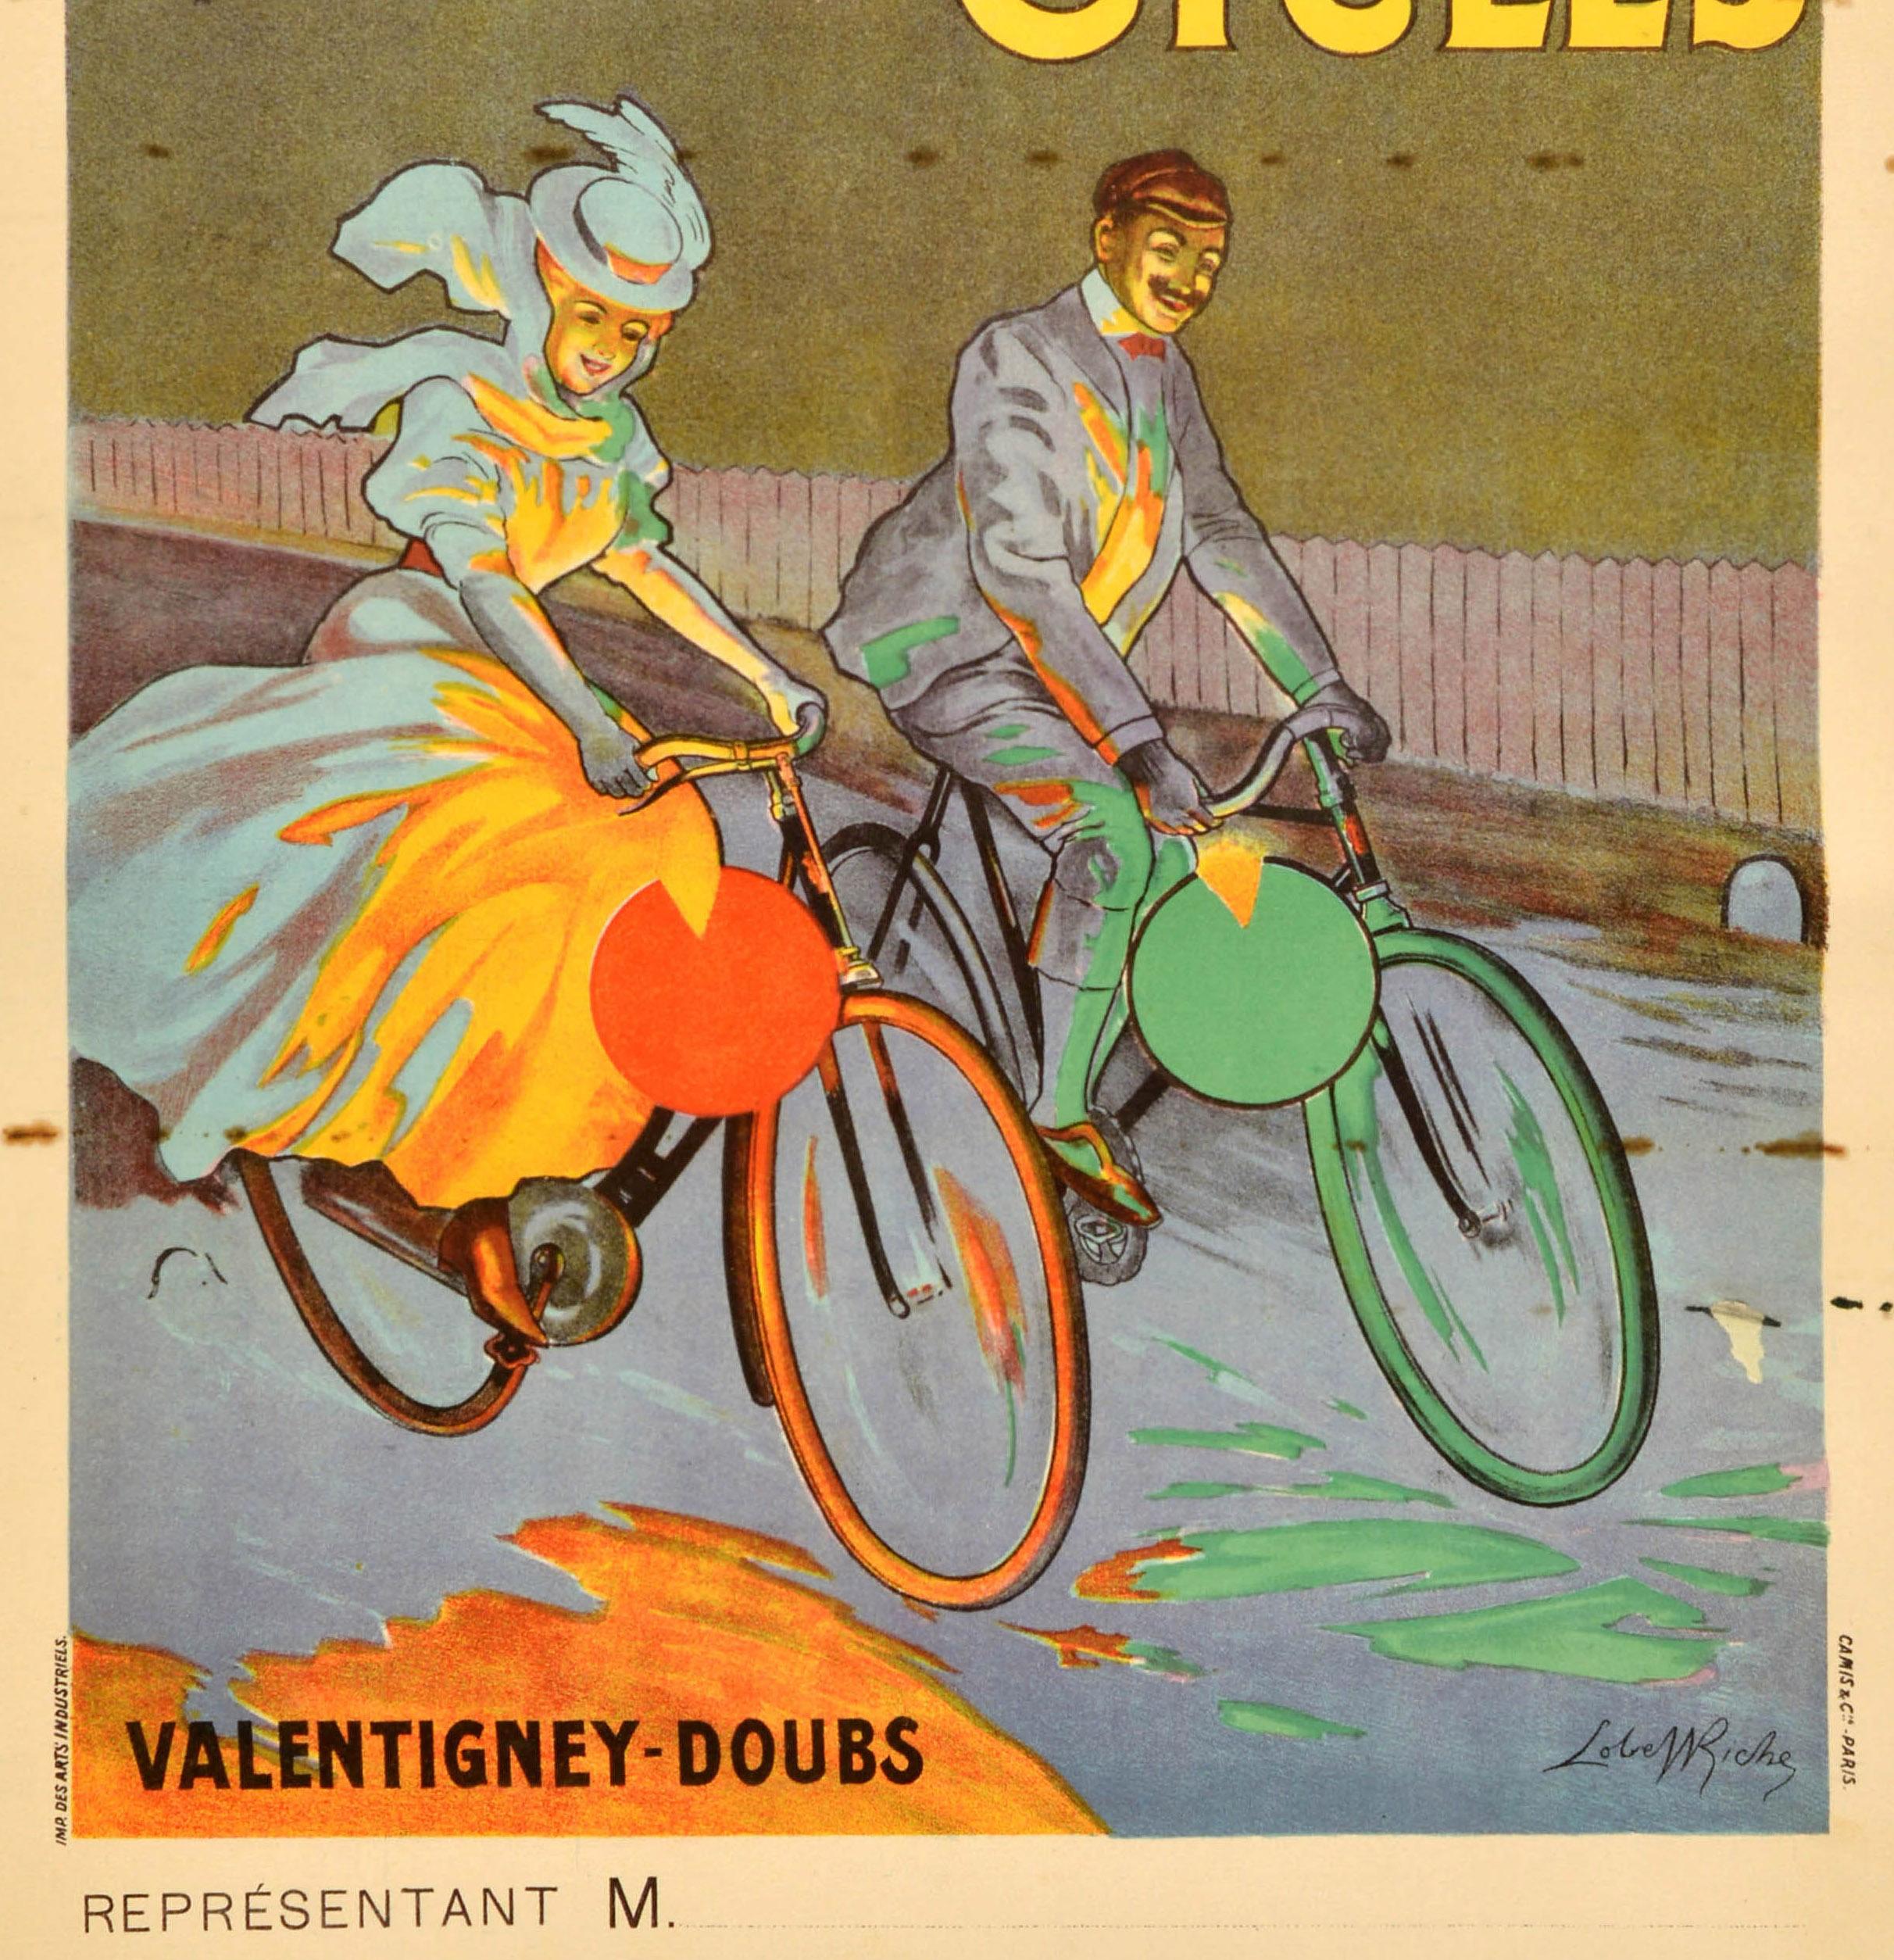 Originales antikes Fahrrad-Werbeplakat für Peugeot Cycles mit einer großartigen Illustration einer lächelnden, eleganten Dame in einem modischen Kleid, einem wallenden Schal und einem Hut sowie einem elegant gekleideten Herrn, die auf roten und